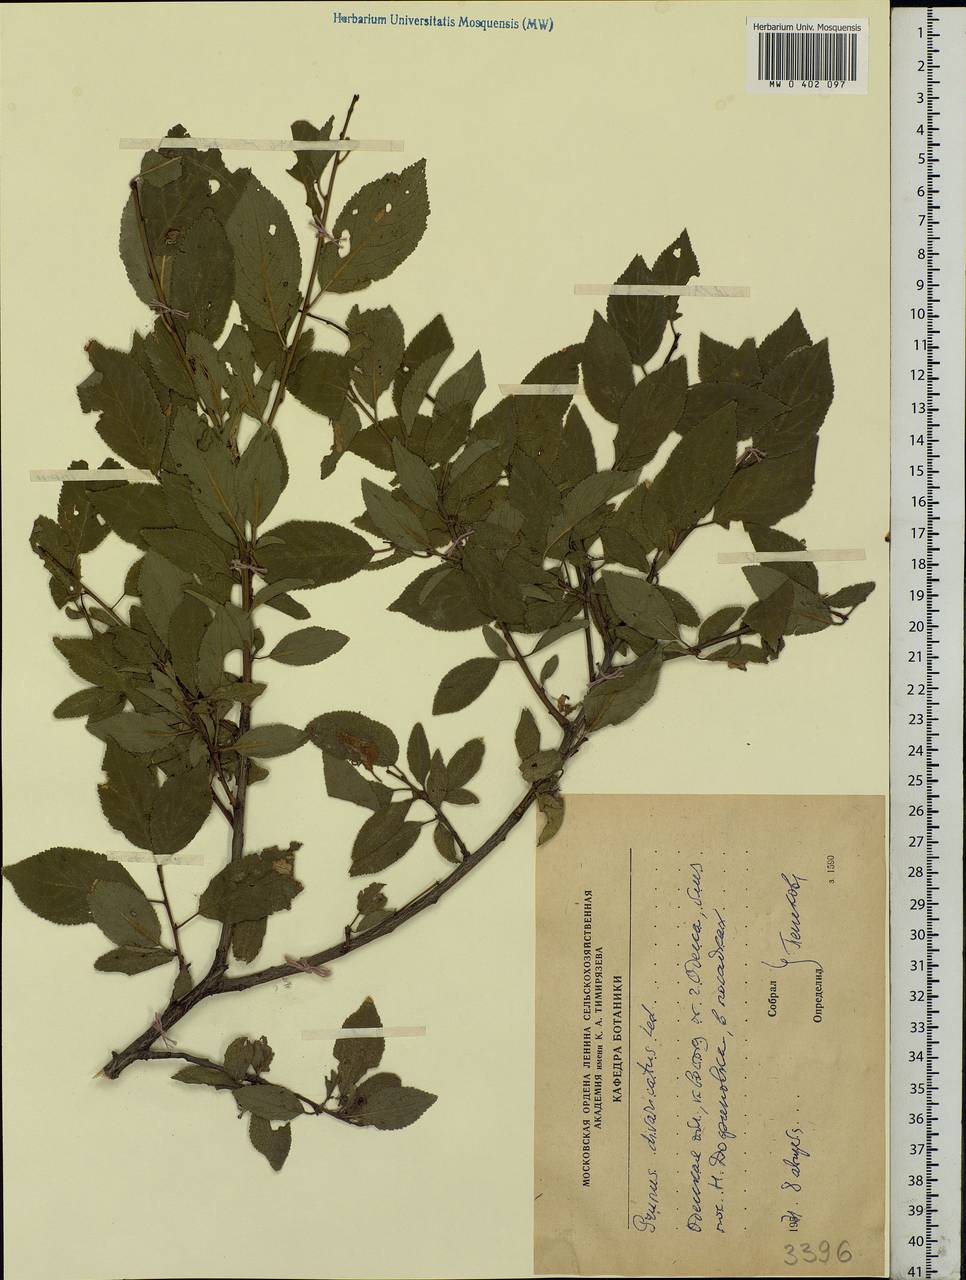 Prunus domestica L., Eastern Europe, South Ukrainian region (E12) (Ukraine)